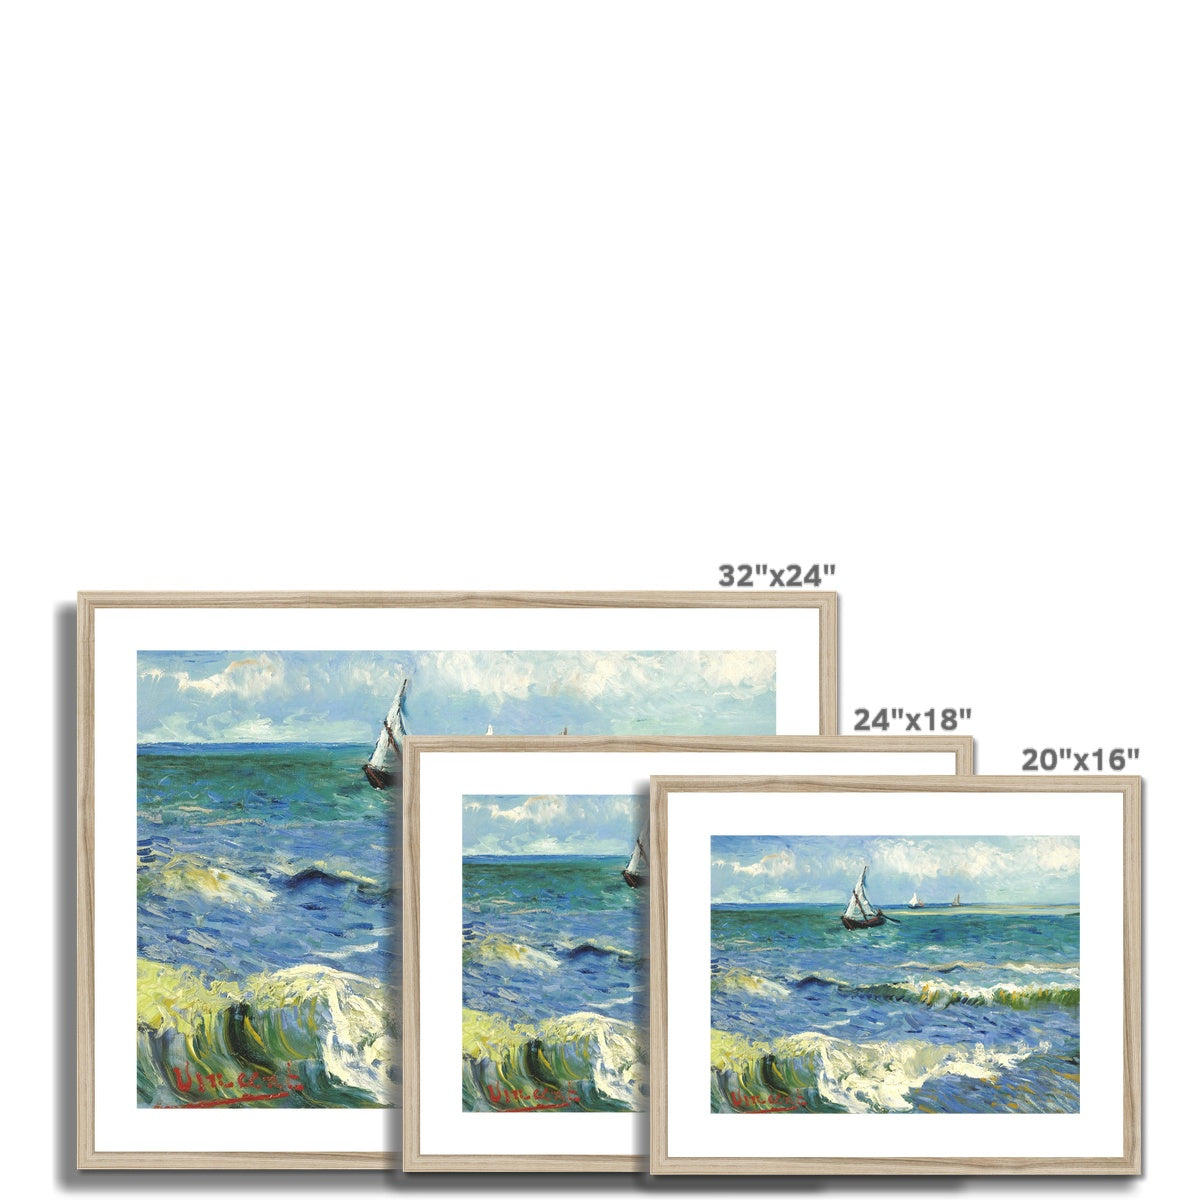 Vincent Van Gogh Framed Open Edition Art Print. &#39;Seascape near Les Saintes-Maries-de-la-Mer&#39; Still-Life. Art Gallery Historic Art